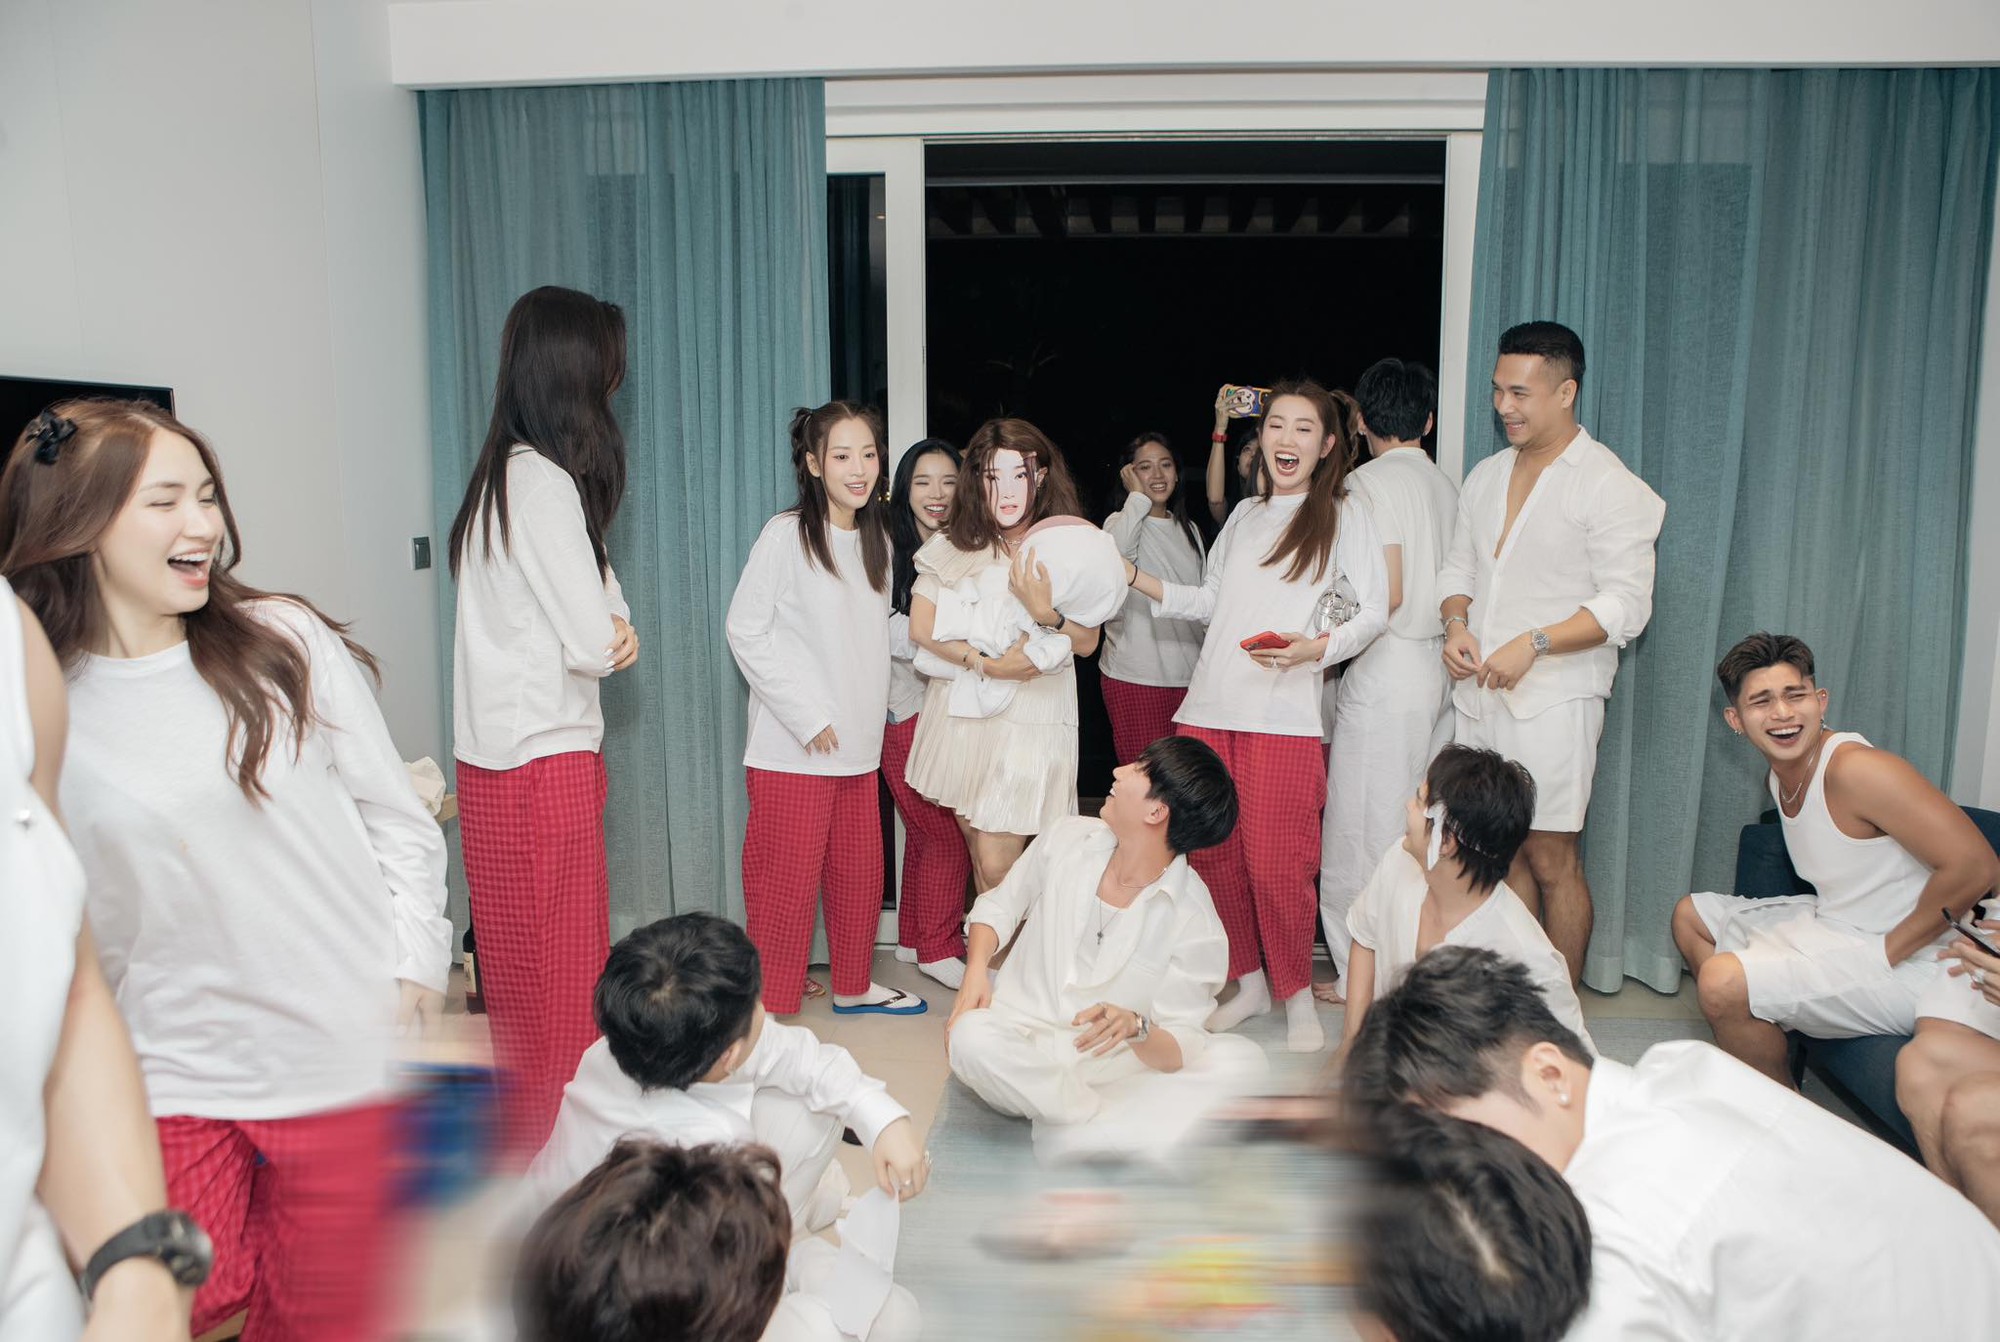 Trường Giang quậy tưng bừng trong tiệc độc thân của Puka - Gin Tuấn Kiệt - Ảnh 8.